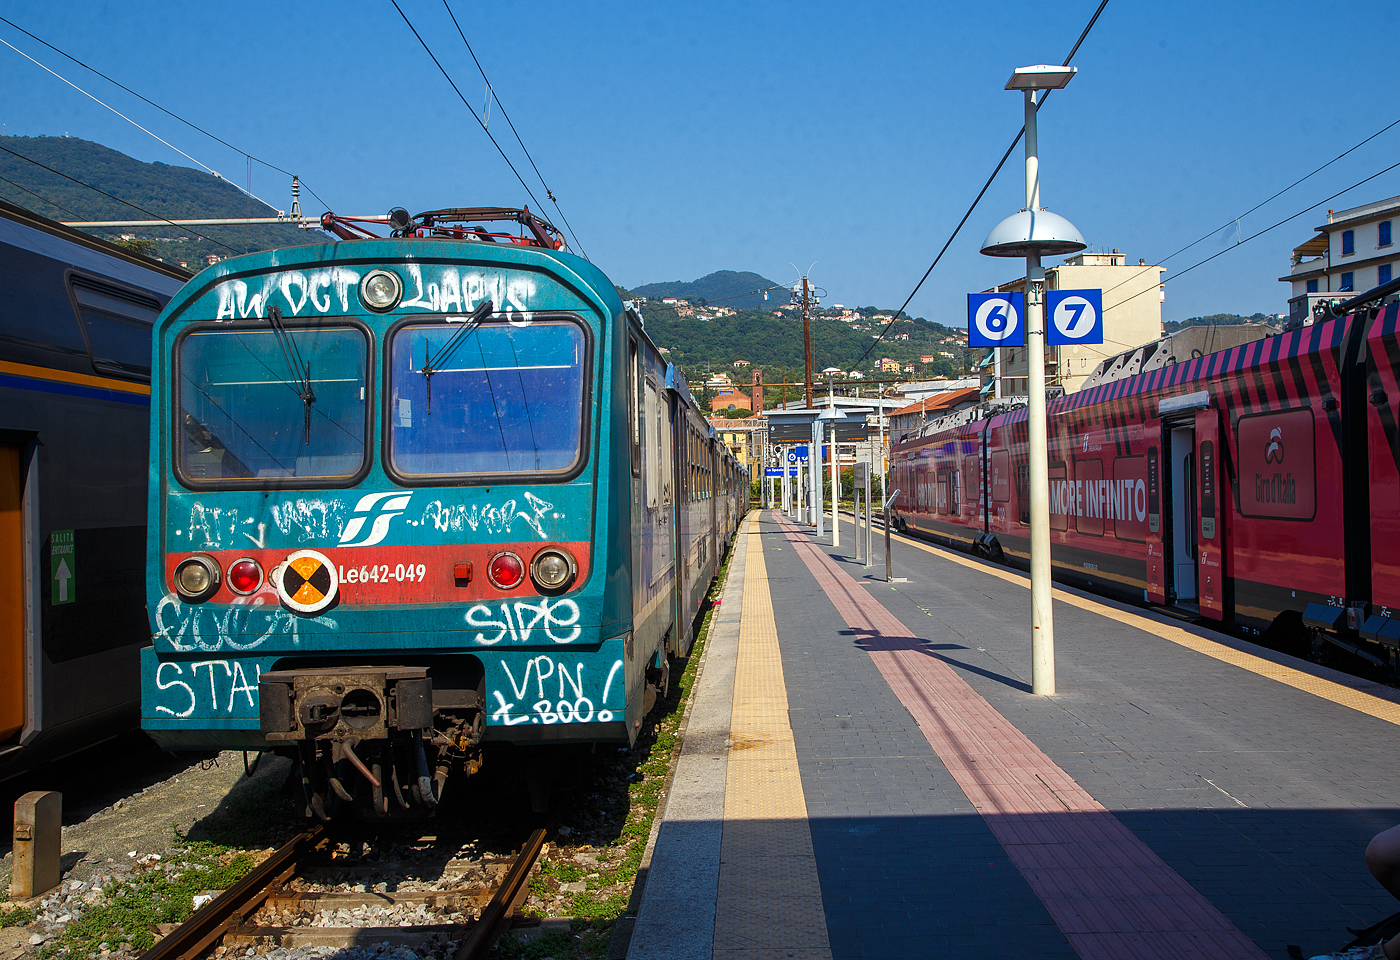 Der Trenitalia ALe 642 / Le 764 / Le 682 steht am 21.07.2022 im Bahnhof La Spezia Centrale.
Die Elektrotriebzge der Baureihen ALe 642 / Le 764 / Le 682 der italienischen Ferrovie dello Stato (FS) sind leichte Elektrotriebzge, die von 1991 bis 1995 beschafft wurden. Die zwischen 1991 und 1995 gelieferter Serie umfasste 60 Triebwagen (Ale 642), 24 Steuerwagen (Le 682) und 48 Zwischenwagen (Le 764). Gebaut wurden sie durch AnsaldoBreda, Firema sowie Stanga. Die Triebwagen haben nur einen Fhrerstand und werden deshalb immer mindestens mit dem zugehrigen Steuerwagen Le 682 oder mit einem zweiten Triebwagen ALe 642 eingesetzt. Es knnen zustzlich ein bis zwei Zwischenwagen Le 764 eingereiht werden. Die Zge sind wegen genderter Steuerstromkreise nicht kompatibel mit den vorhergehenden Zgen, den Triebwagen ALe 724 oder ALe 582. 

Diese Elektrische Triebzge sind eine Weiterentwicklung der Triebwagen ALe 582 und der dazu gehrenden Steuer- und Zwischenwagen, die Ende der 1980er Jahre geliefert wurden. Neben den genderten Steuerstromkreisen wurde der Triebwagen wieder auf reine 2.-Klasse-Bestuhlung umgestellt und im Steuerwagen das Gepckabteil entfernt und zustzliche Pltze 2. Klasse untergebracht.

Die Triebwagen sind mit vier Fahrmotoren ausgerstet, die ber Chopper mit Energie versorgt werden. Die elektrische Bremse kann sowohl als Nutzbremse wie auch als Widerstandsbremse betrieben werden. Ein statischer Hilfsbetriebeumrichter erzeugt 380 V 50 Hz Wechselstrom zur Versorgung der Hilfsbetiebe.

TECHNISCHE DATEN der Triebwagen ALe 642
Spurweite: 1.435 mm (Normalspur)
Achsfolge: Bo 'Bo'
Lnge ber Puffer: 26.115 mm
Drehzapfenabstand: 17.540 mm
Achsabstand im Drehgestell: 2.560 mm
Raddurchmesser:  860 mm (neu)
Eigengewicht: 54 t
Anzahl der Motoren: 4
Motortyp: 4 EXH 4046
bersetzungsverhltnis:  30/75
Stundenleistung:  4 x 313 kW = 1.252 kW
Dauerleistung: 4 x  280 kW = 1.120 kW
Hchstgeschwindigkeit: 140 km/h
Stromsystem: 3 kV DC (3000 V =)
